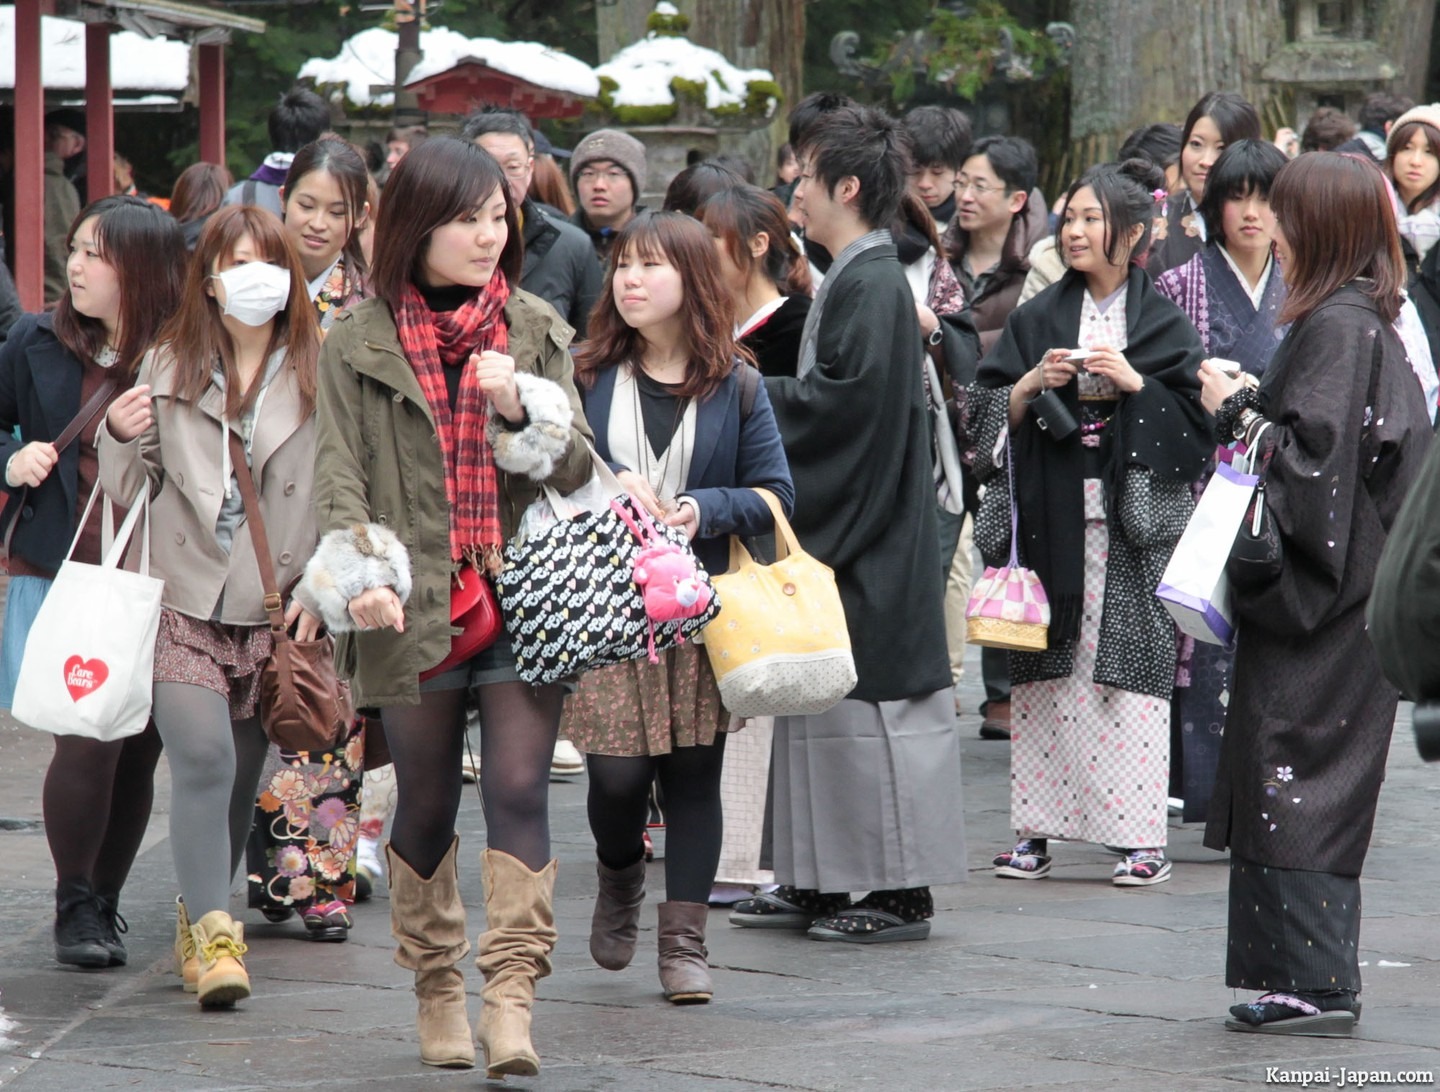 5. Ăn mặc kín đáo: Người Nhật có phong cách ăn mặc kín đáo hơn người phương Tây. Nếu bạn là nữ, khi đến du lịch tại đây hãy hạn chế mặc những trang phục hở ngực, váy ngắn hay quần sooc khi ra đường.